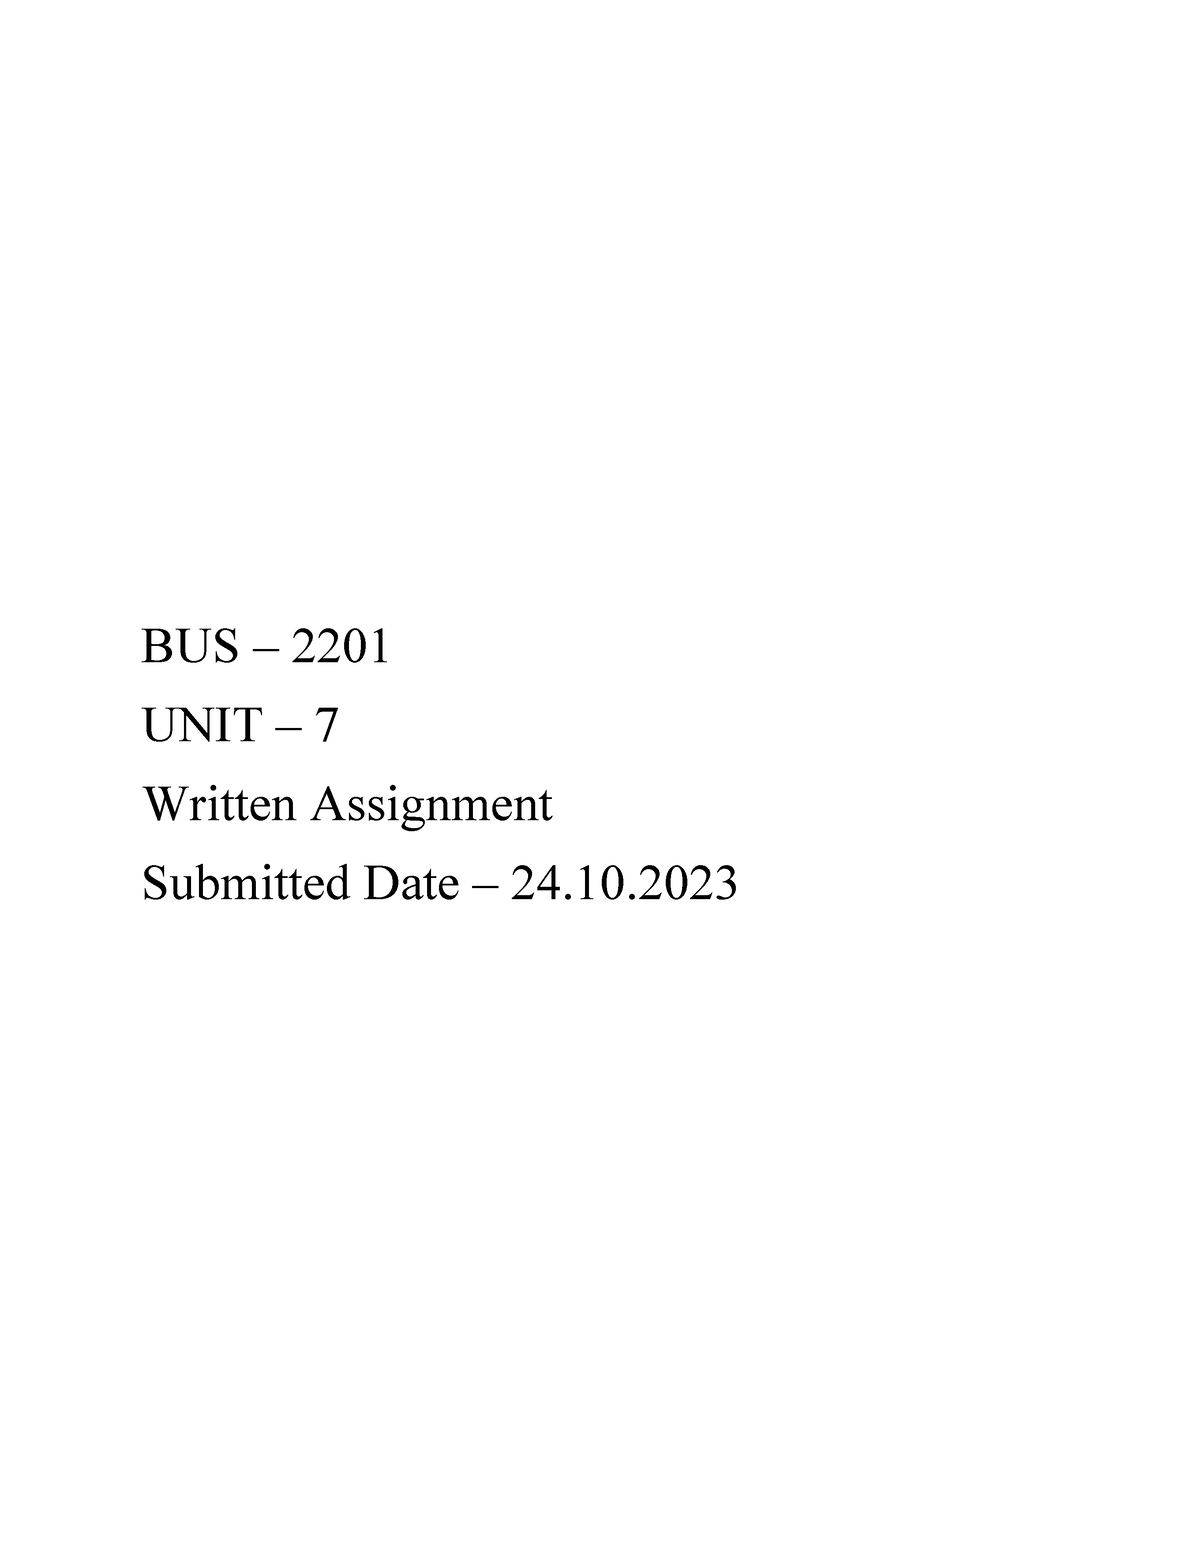 bus 2201 written assignment unit 7